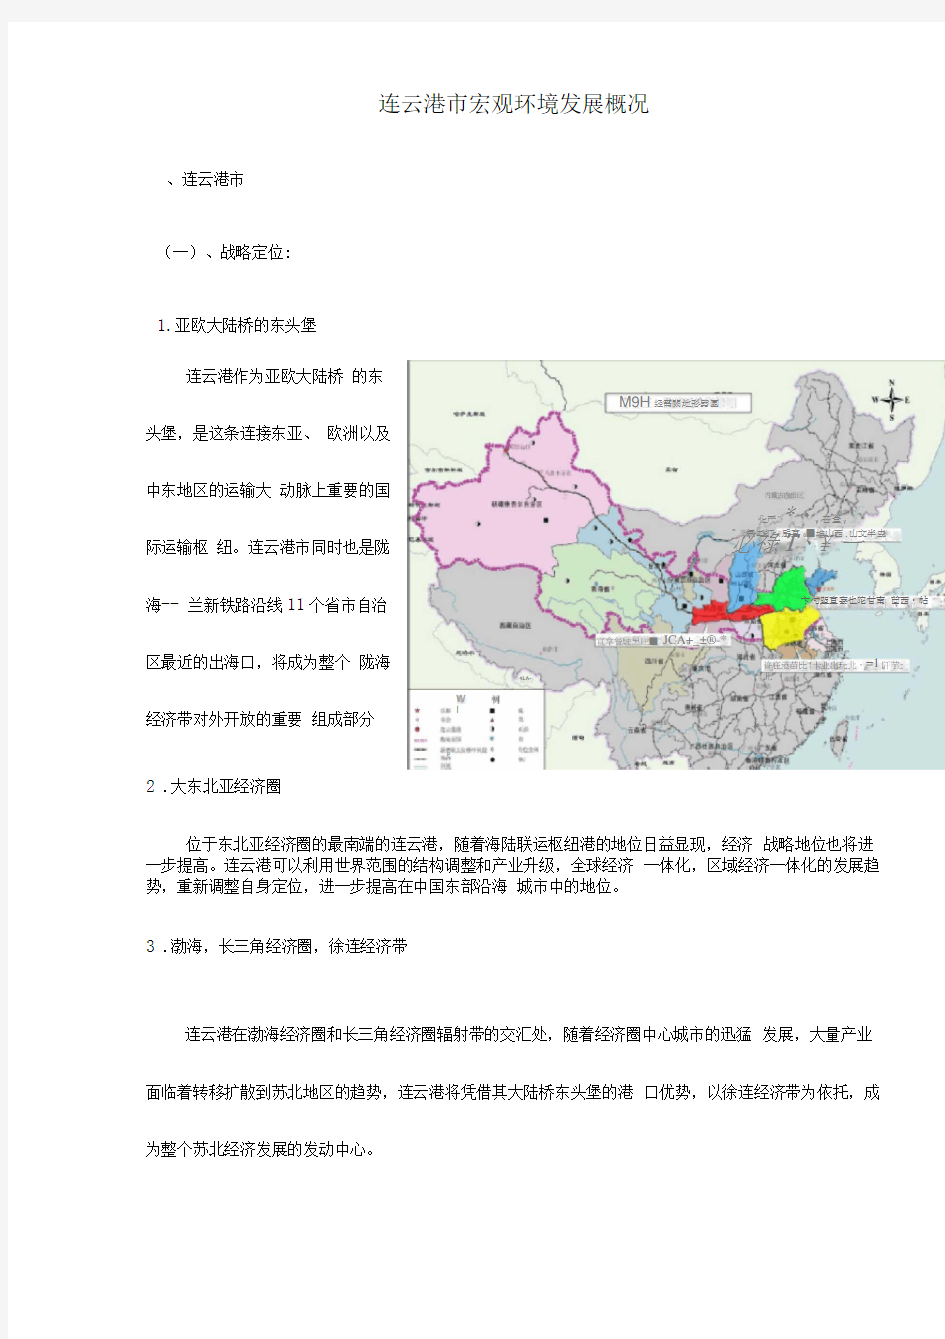 连云港市宏观环境发展概况(1)